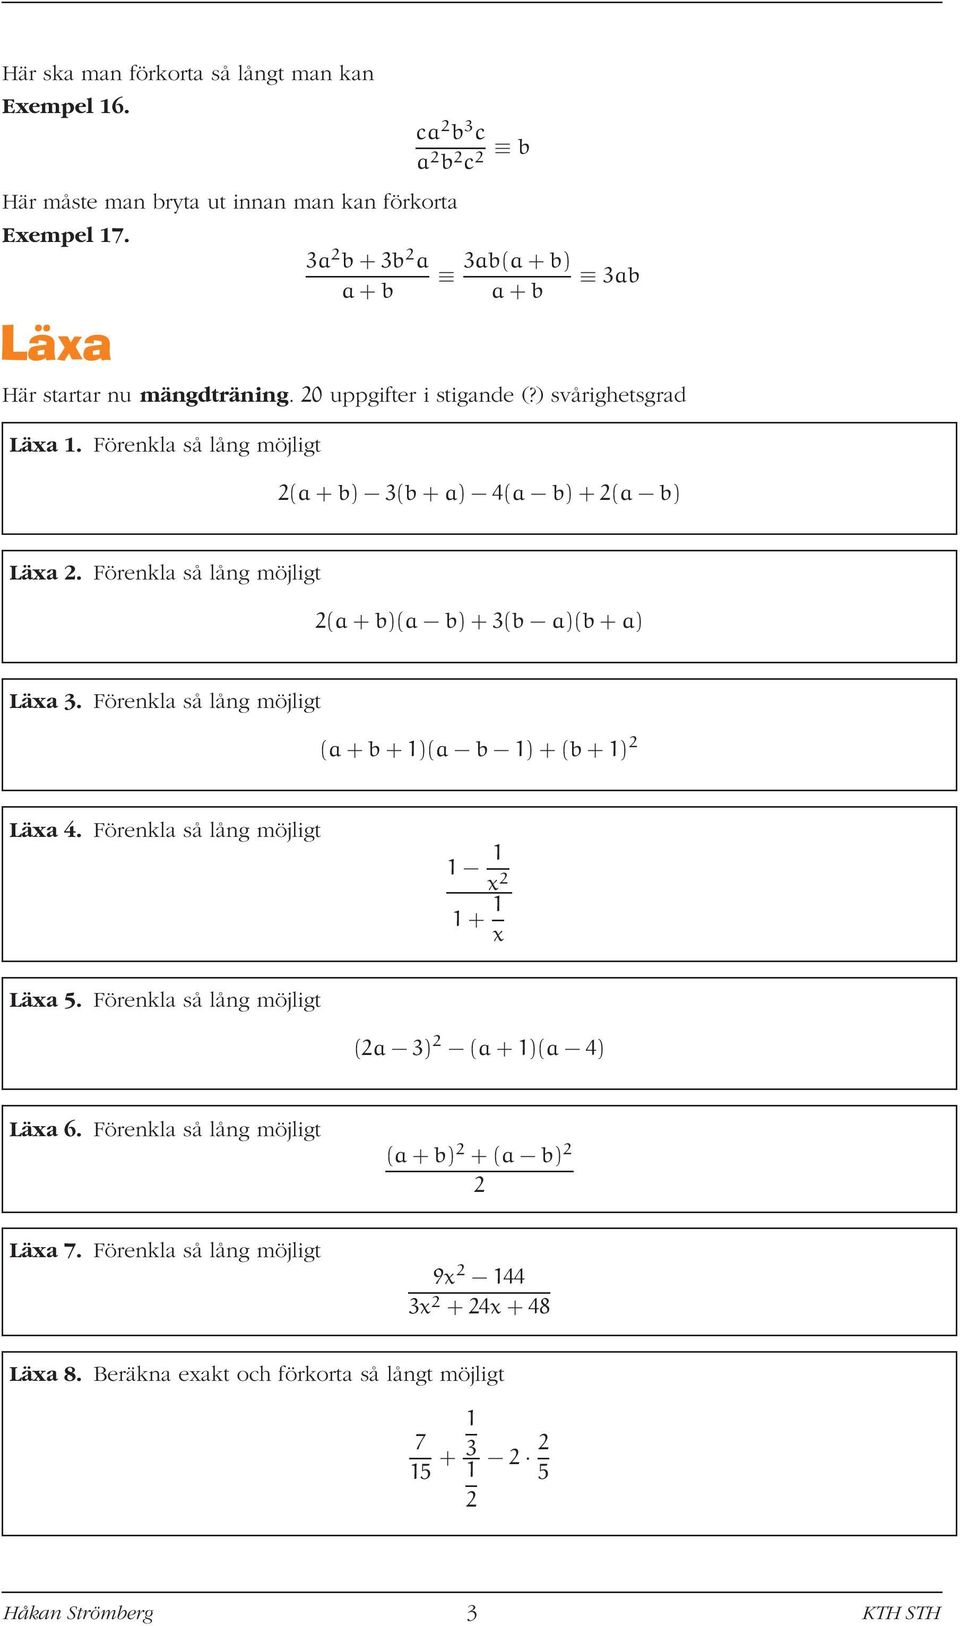 Förenkl så lång möjligt (+b) 3(b+) ( b)+( b) Lä. Förenkl så lång möjligt (+b)( b)+3(b )(b+) Lä 3. Förenkl så lång möjligt (+b+)( b )+(b+) Lä.